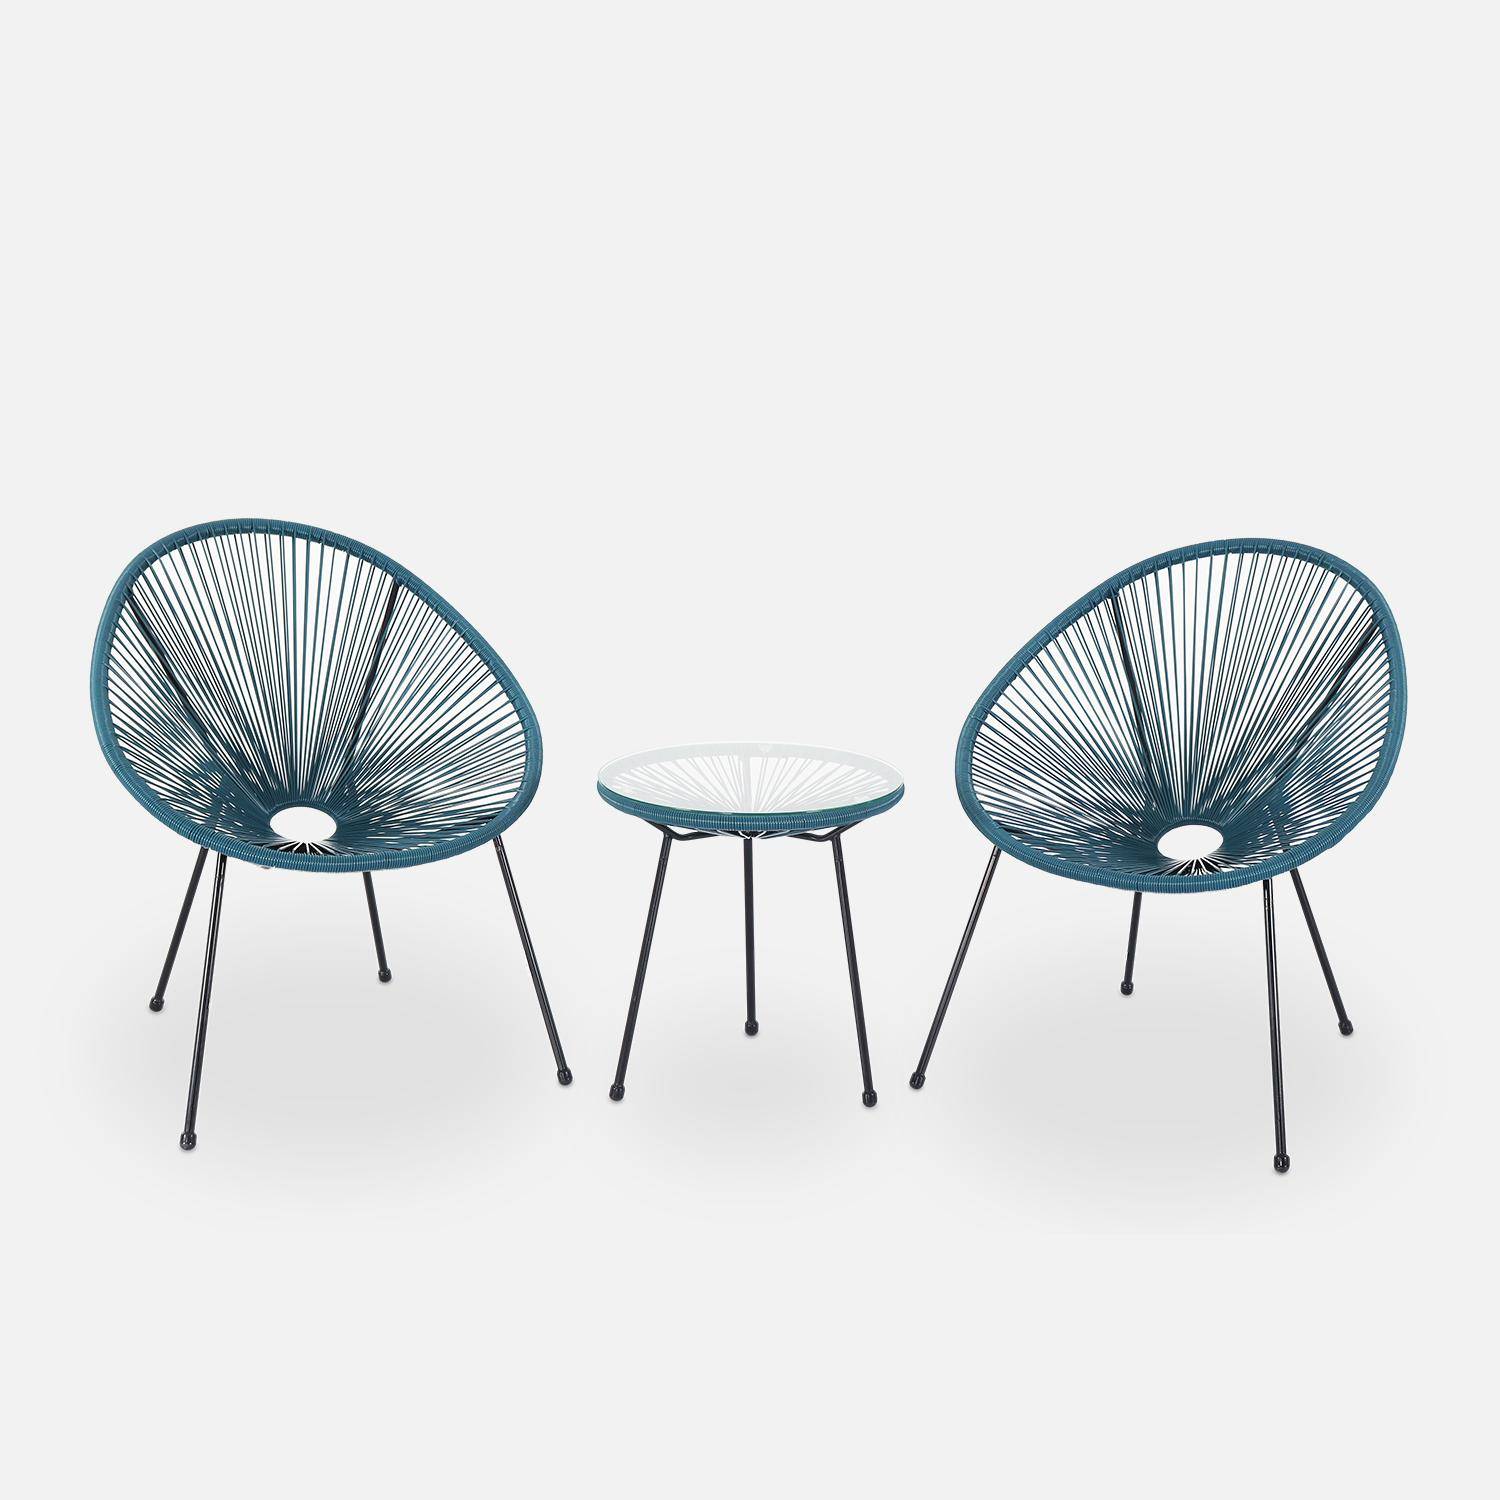 Lot de 2 fauteuils design Oeuf - Acapulco Bleu canard- Fauteuils 4 pieds design rétro, cordage plastique, intérieur / extérieur Photo2